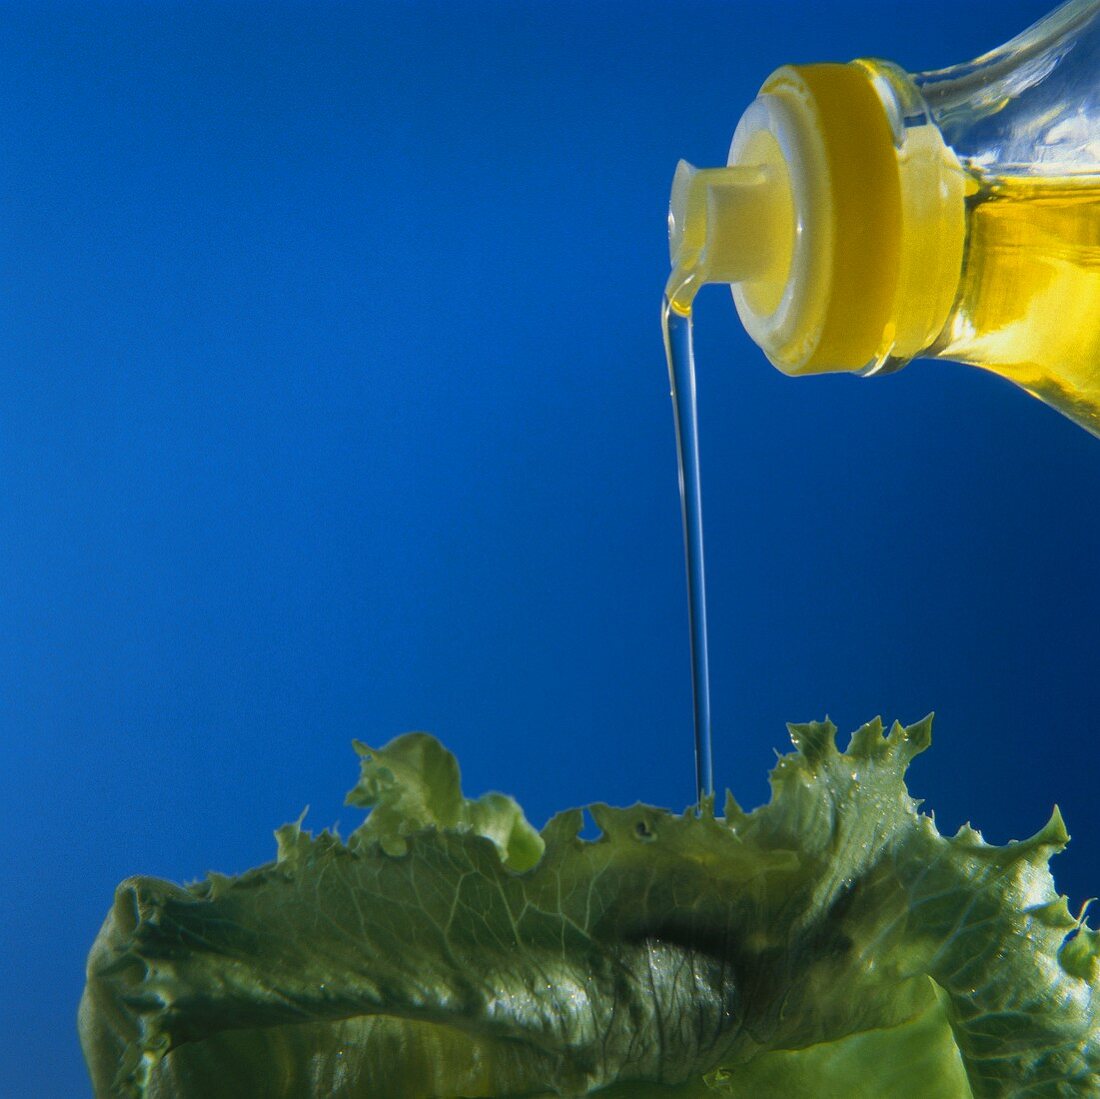 Öl rinnt aus Flasche auf Salatblatt